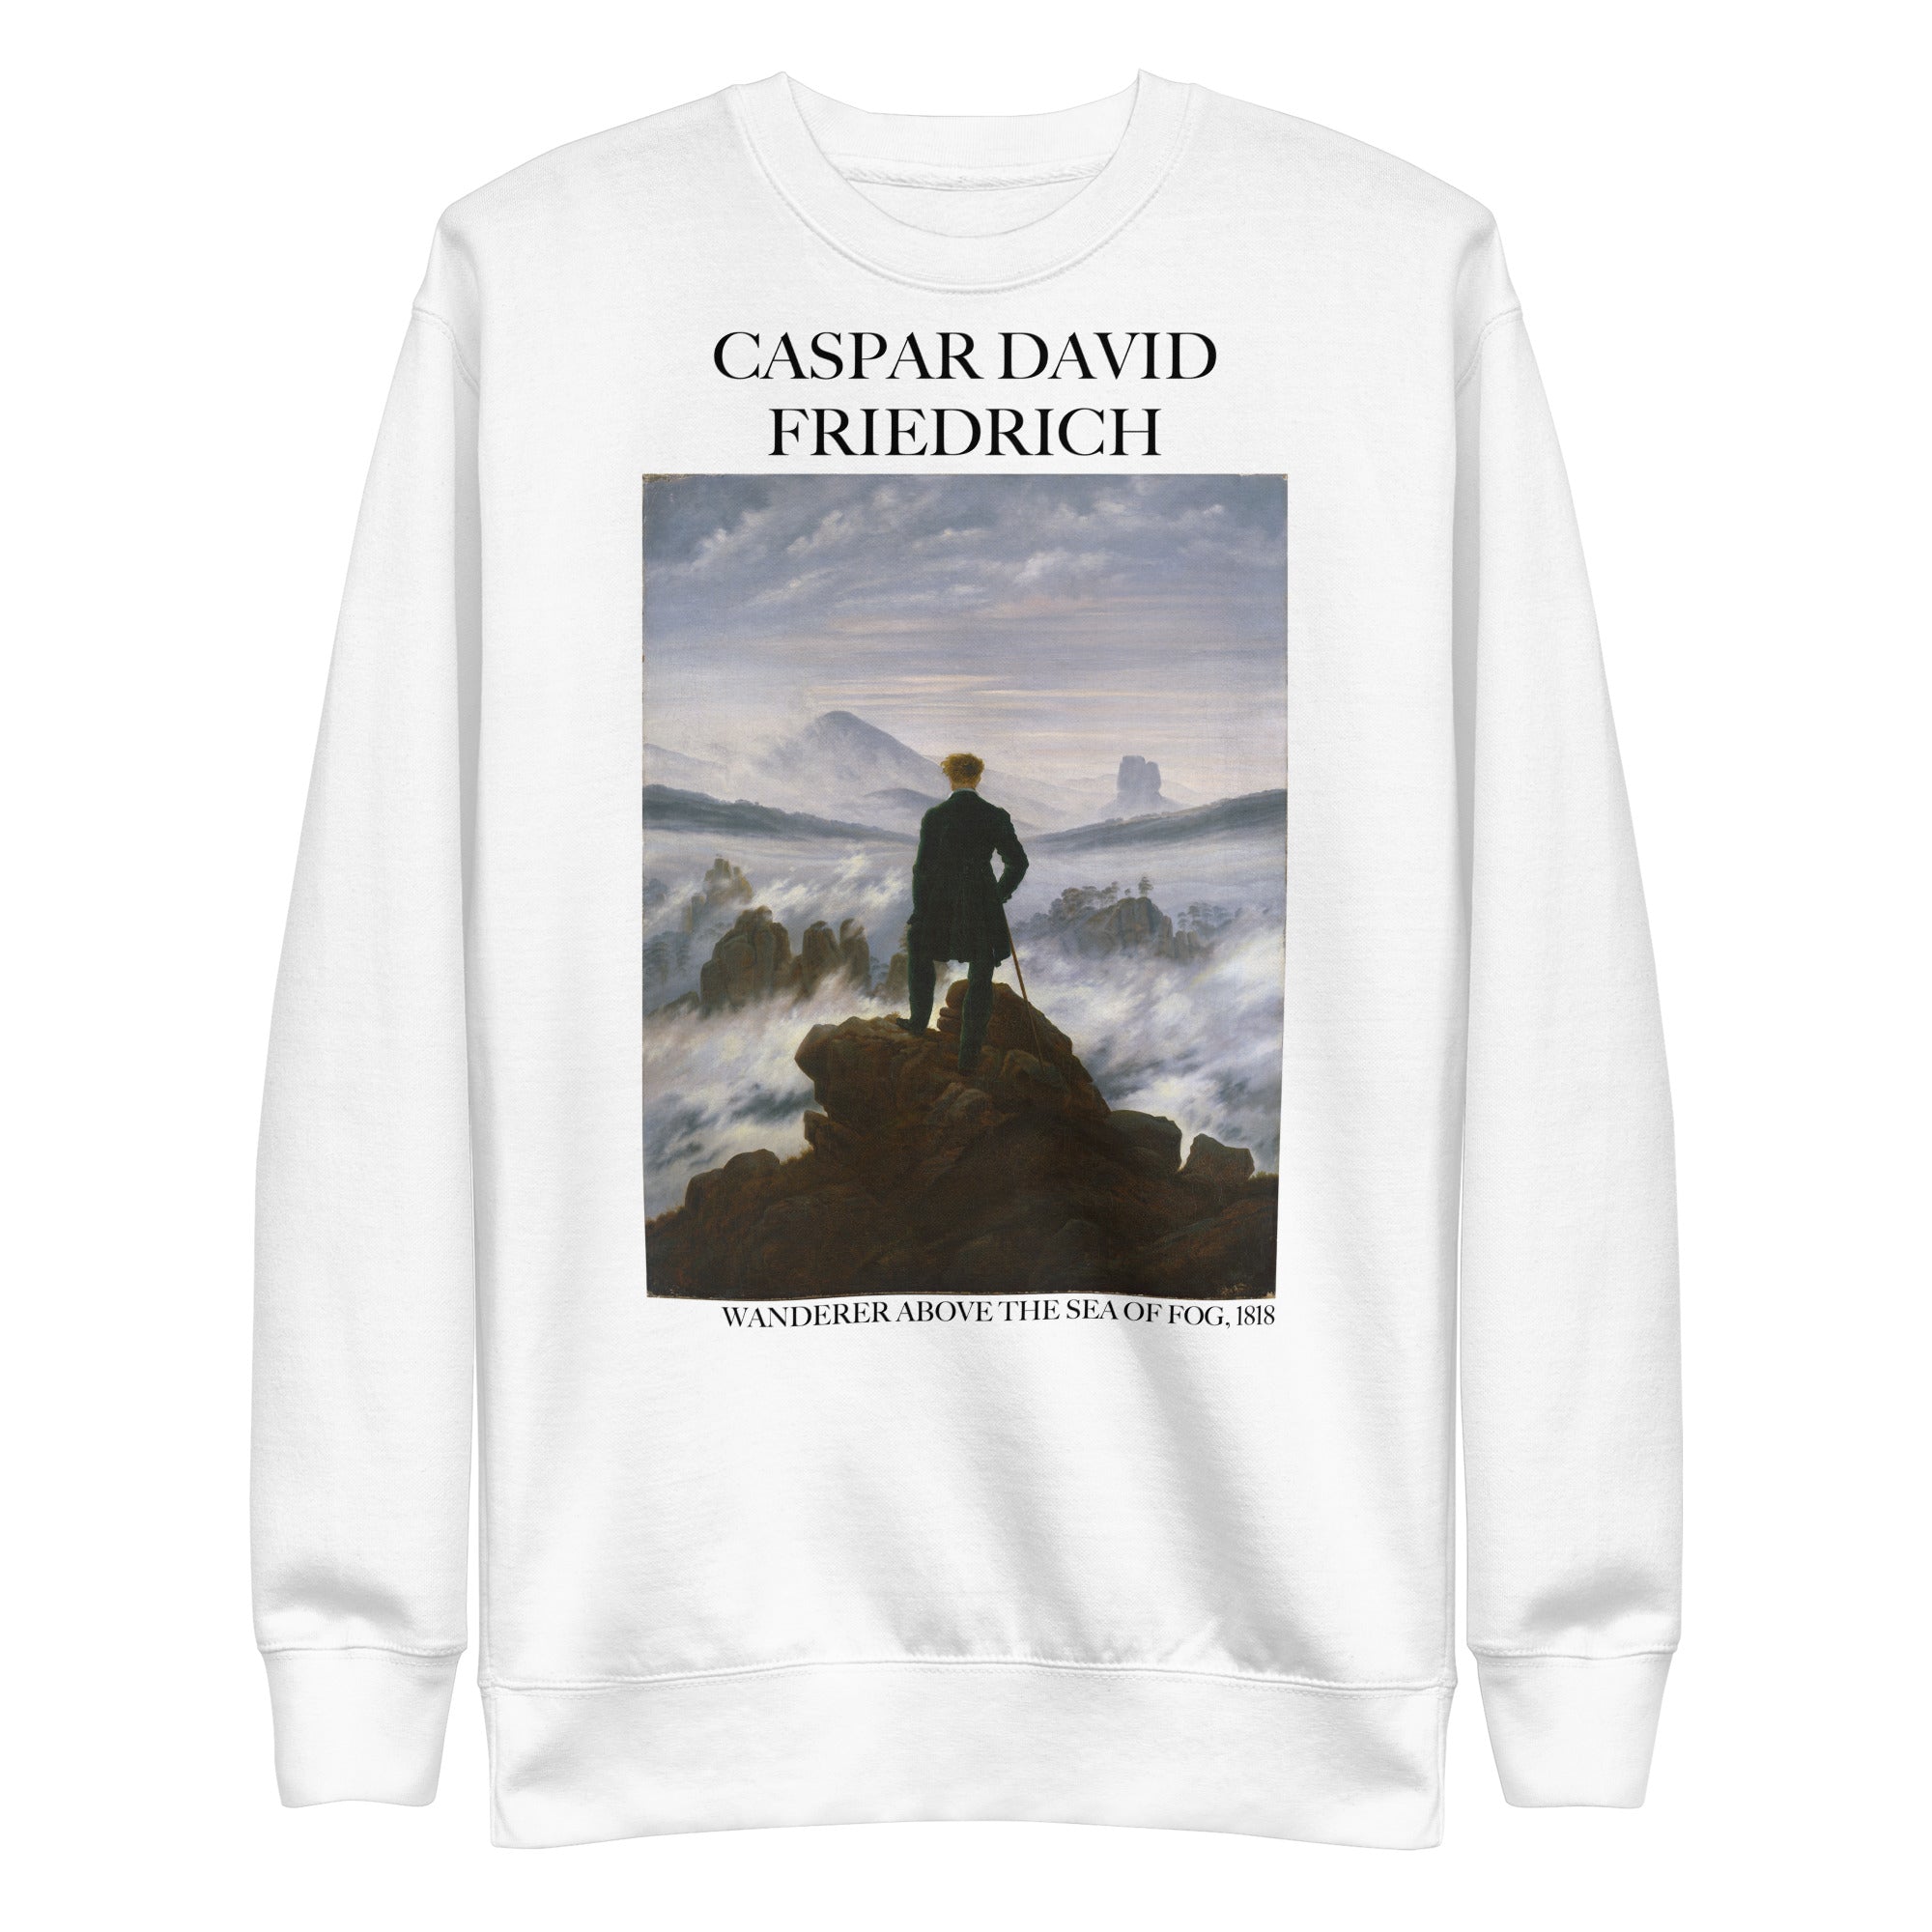 Caspar David Friedrich 'Der Wanderer über dem Nebelmeer' Berühmtes Gemälde Sweatshirt | Unisex Premium Sweatshirt